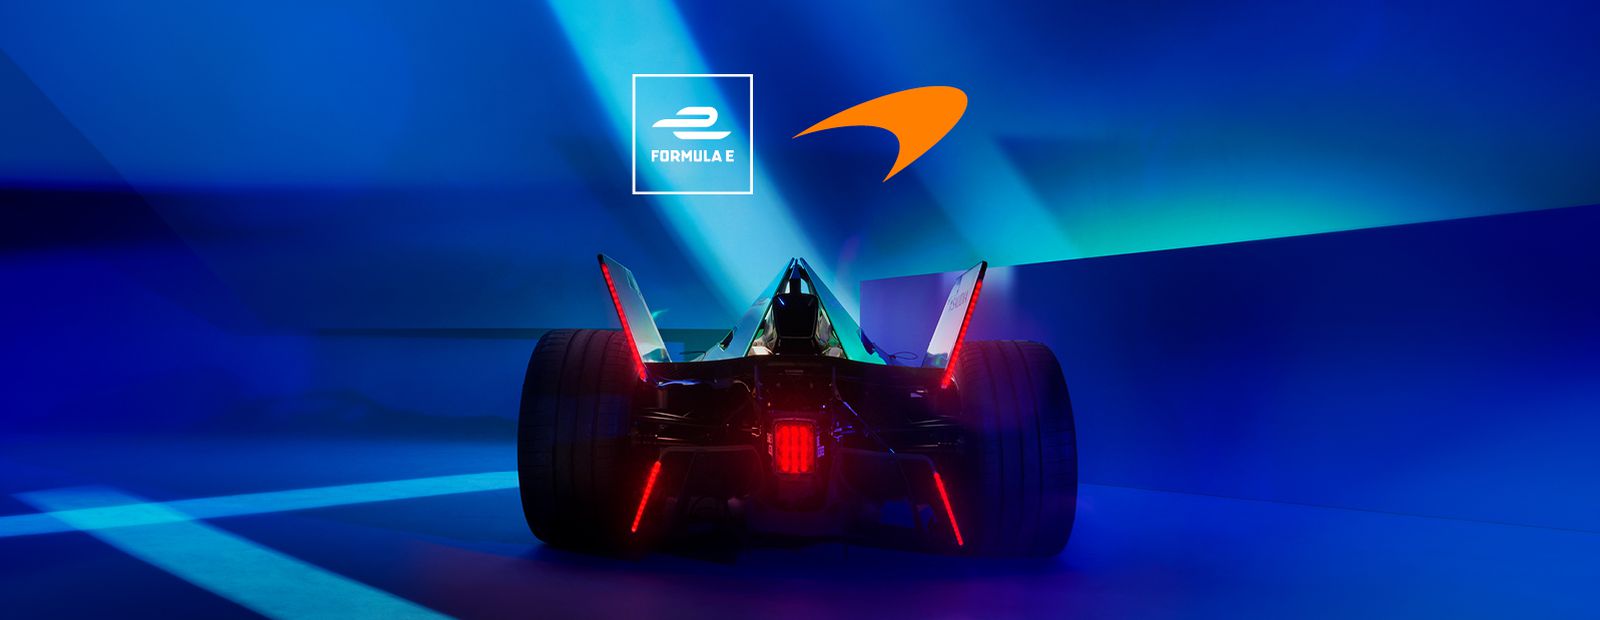 Neom McLaren en Formule E Mondial de l'Auto 2022